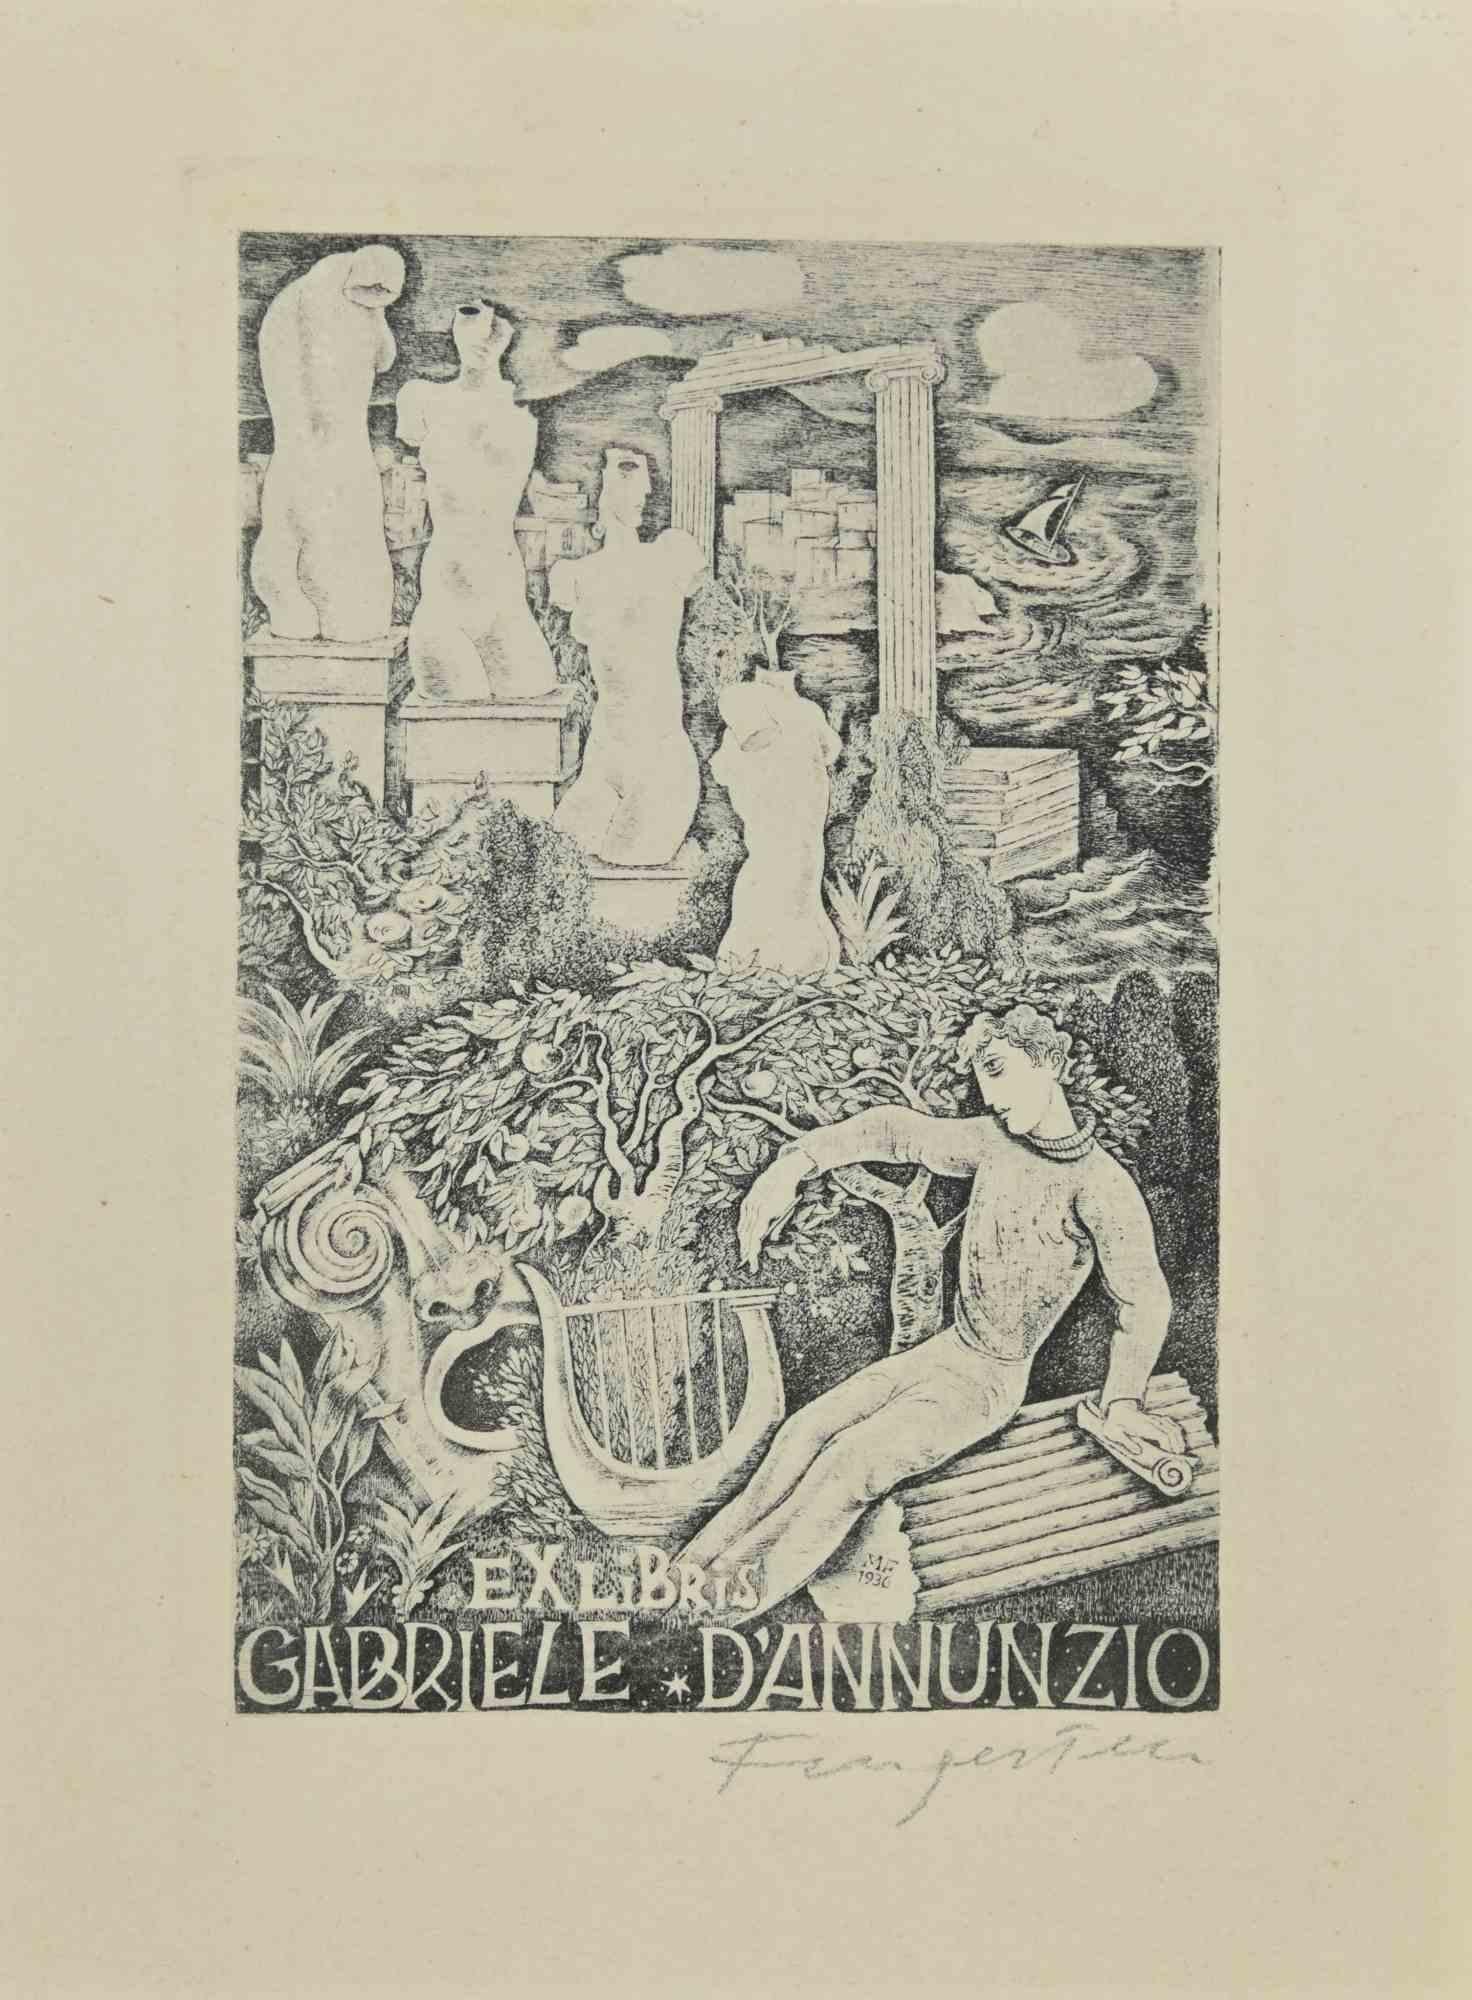 Ex Libris - Gabriele D'Annunzio ist ein Radierungsdruck, der von  Michel Fingesten im Jahr 1936.

Handsigniert am unteren Rand.

Gute Bedingungen.

Michel Fingesten (1884 - 1943) war ein tschechischer Maler und Graveur jüdischer Herkunft. Er gilt